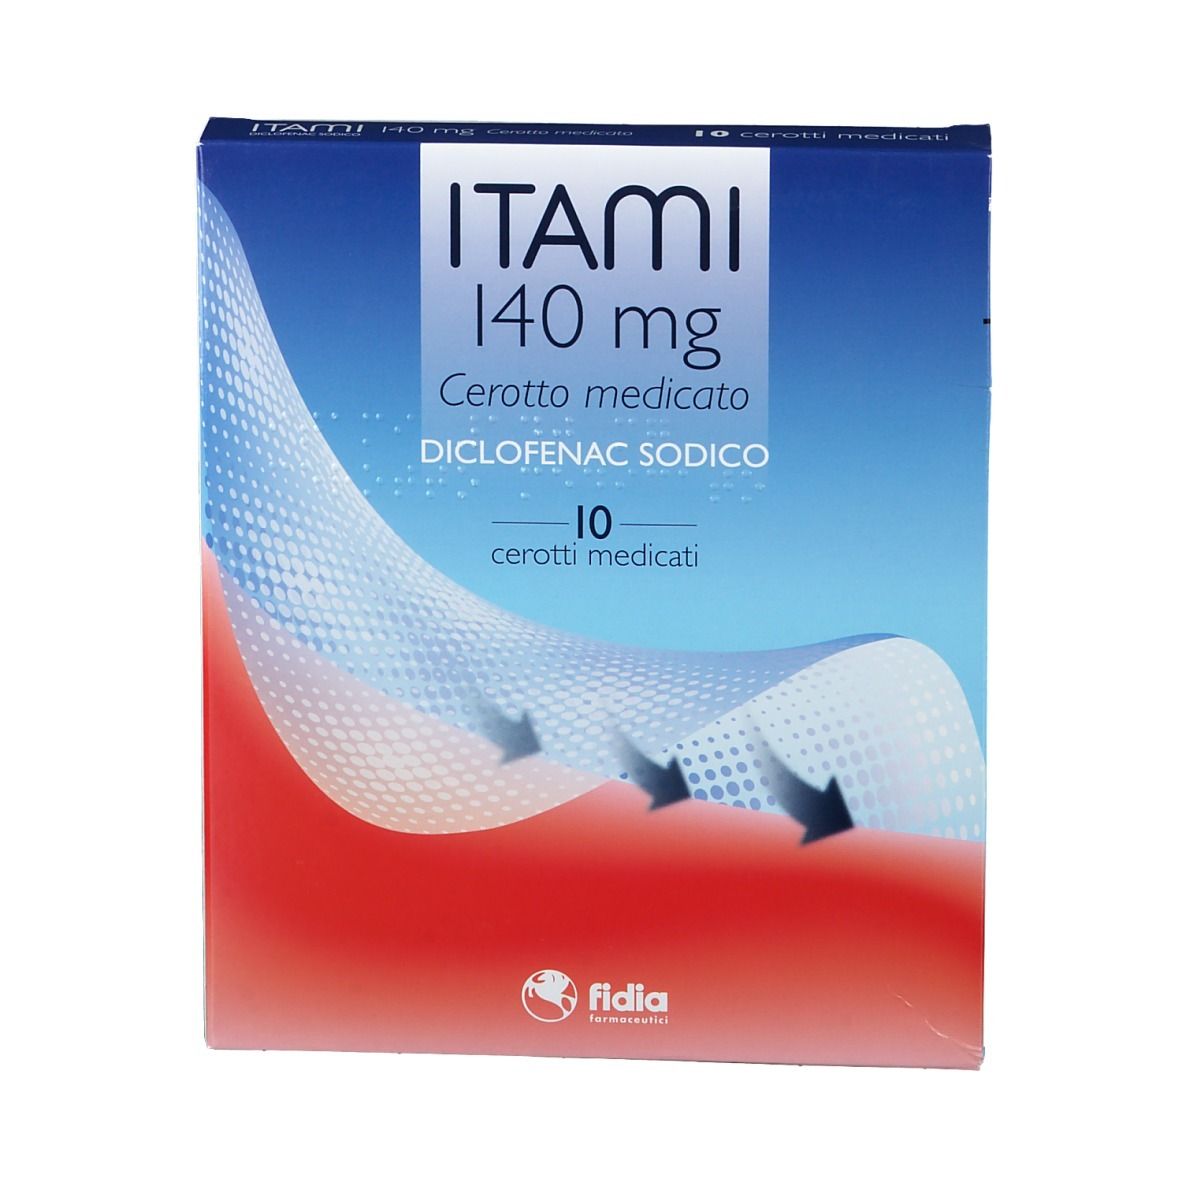 ITAMI 140 mg Cerotto medicato 10 pz